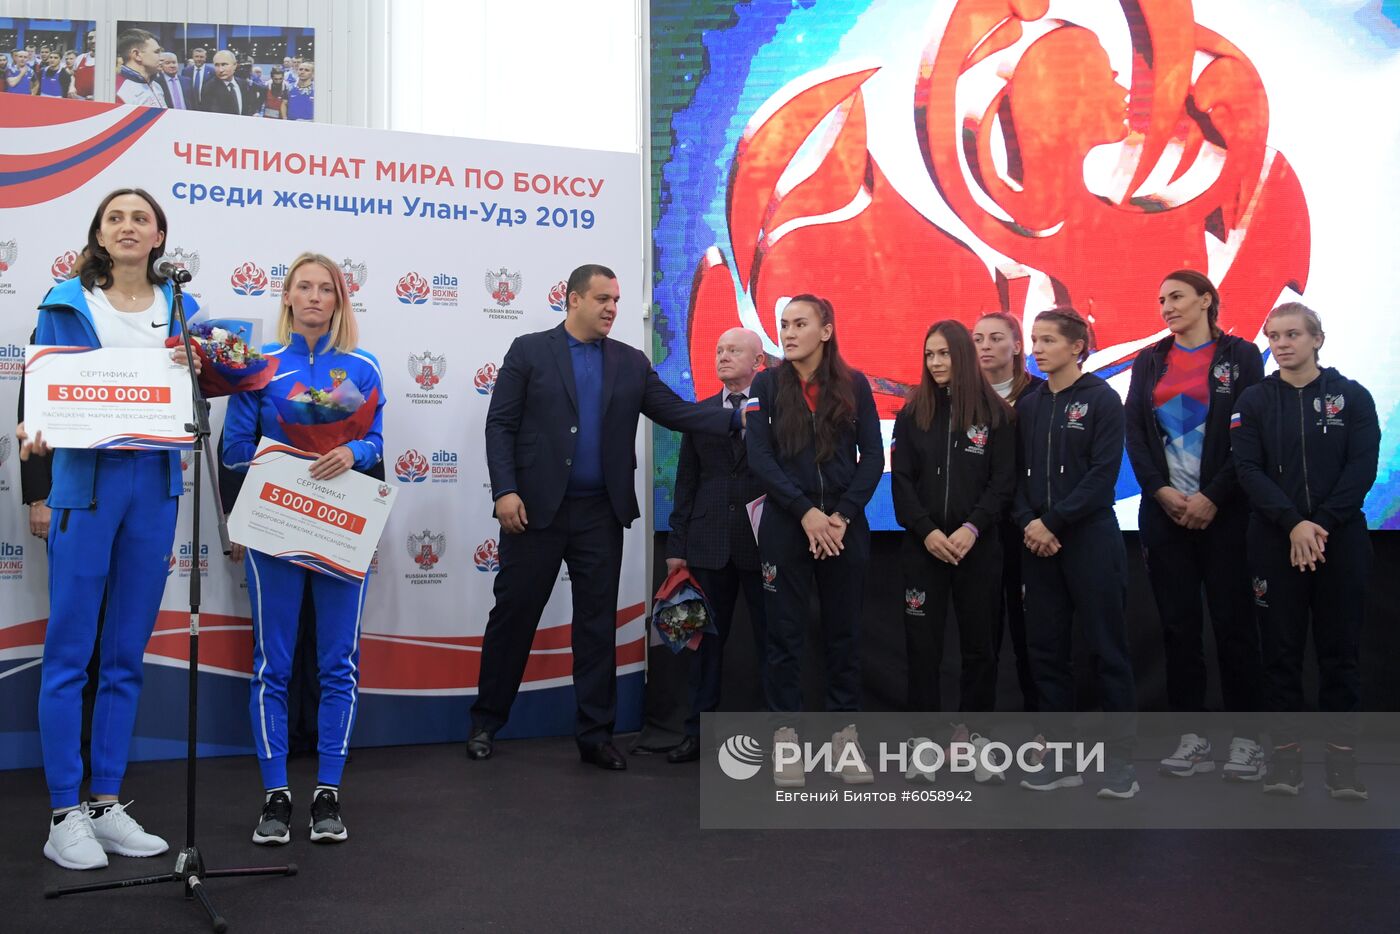 Федерация бокса России наградила легкоатлеток М. Ласицкине и А. Сидорову